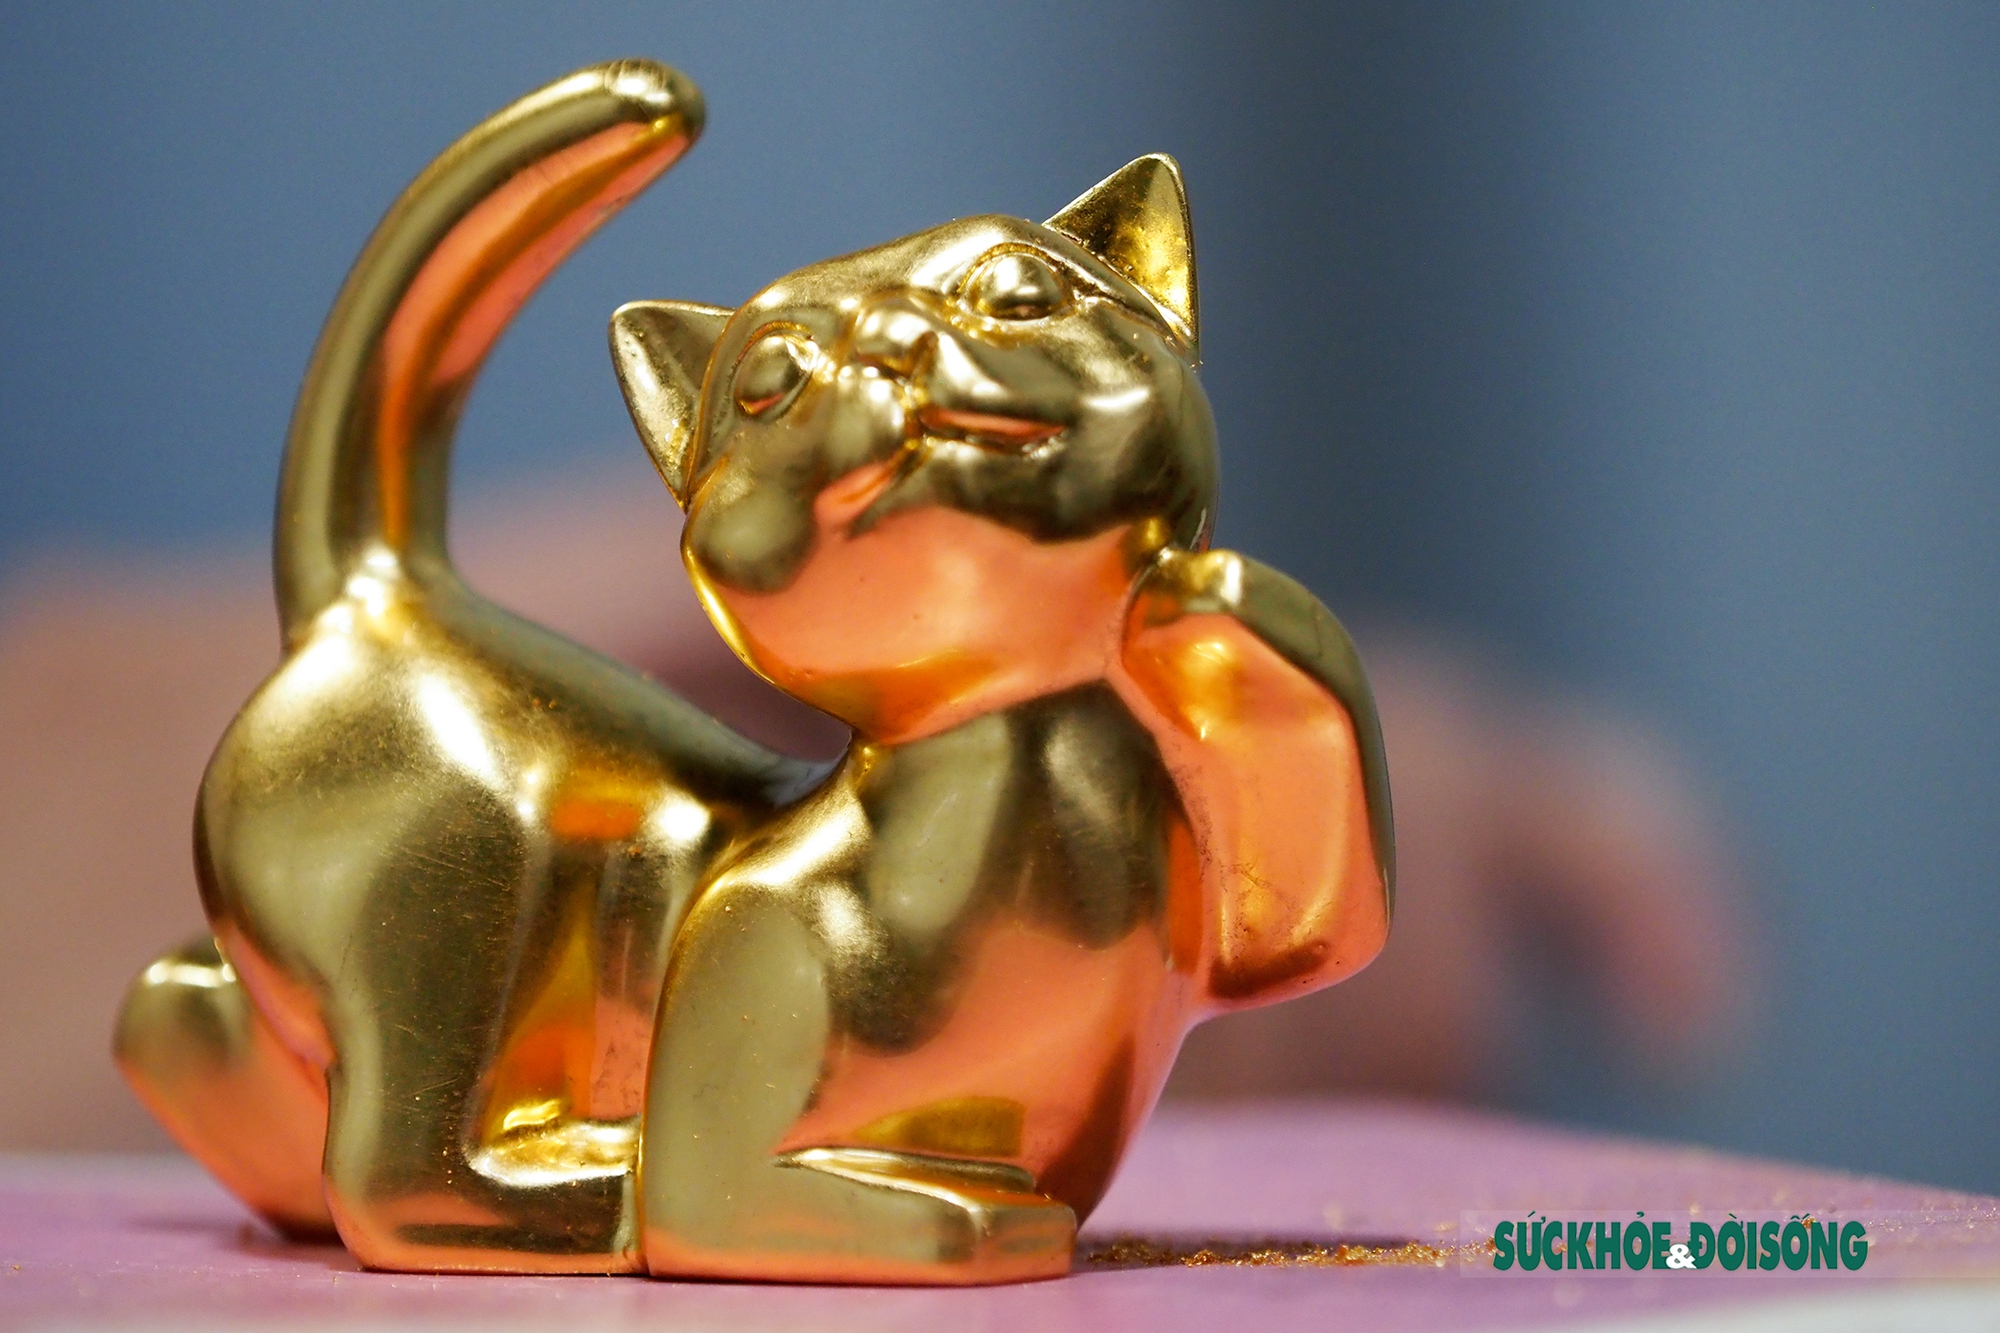 Hình ảnh mèo mạ vàng đem đến không chỉ sự dễ thương mà còn là tâm linh về may mắn, giàu có cho người xem trong năm mới.